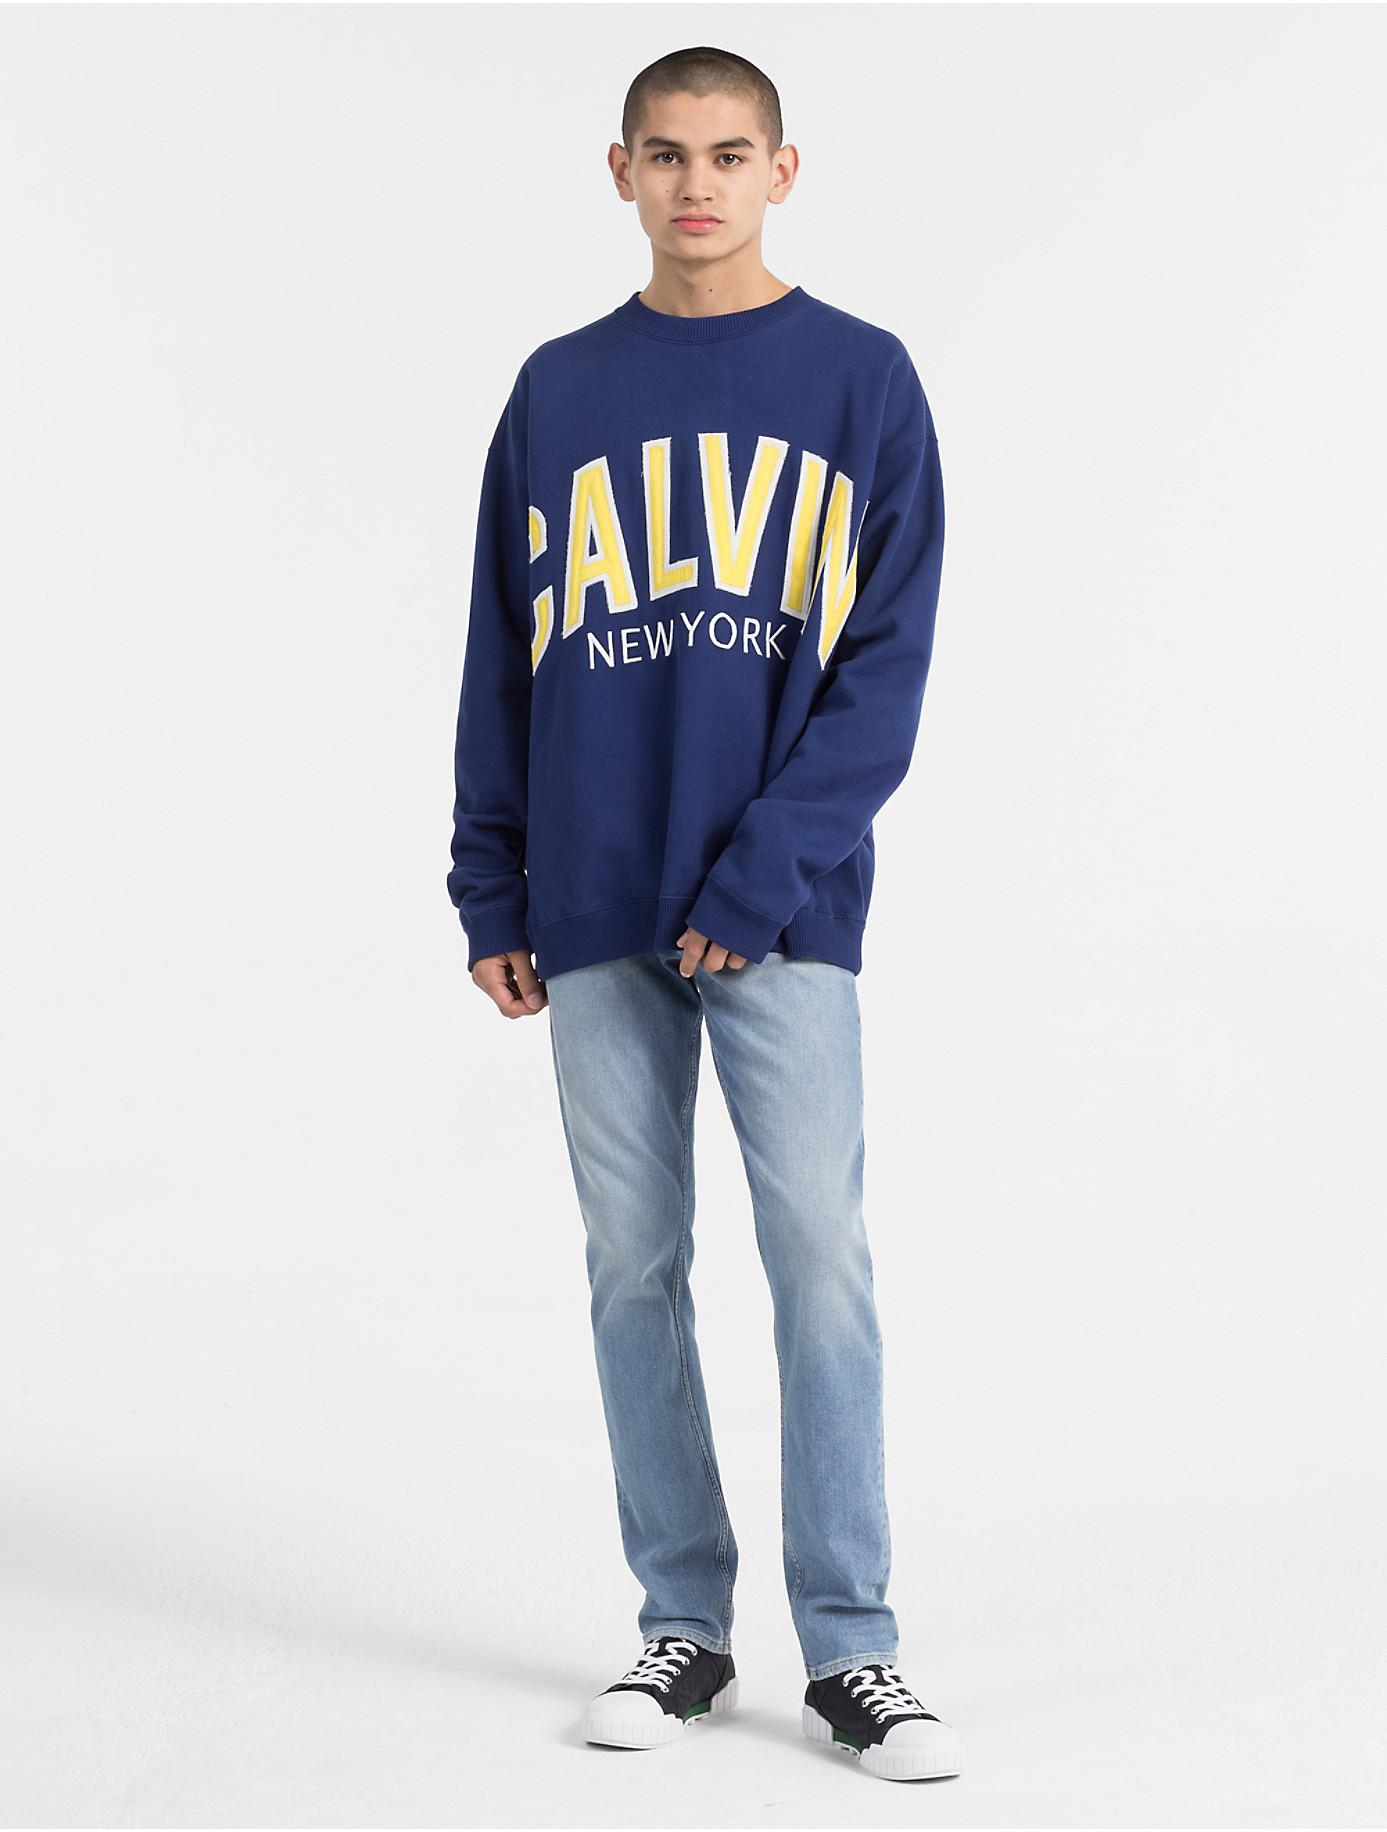 Calvin Klein Blue Sweatshirt Factory Sale, SAVE 51%.